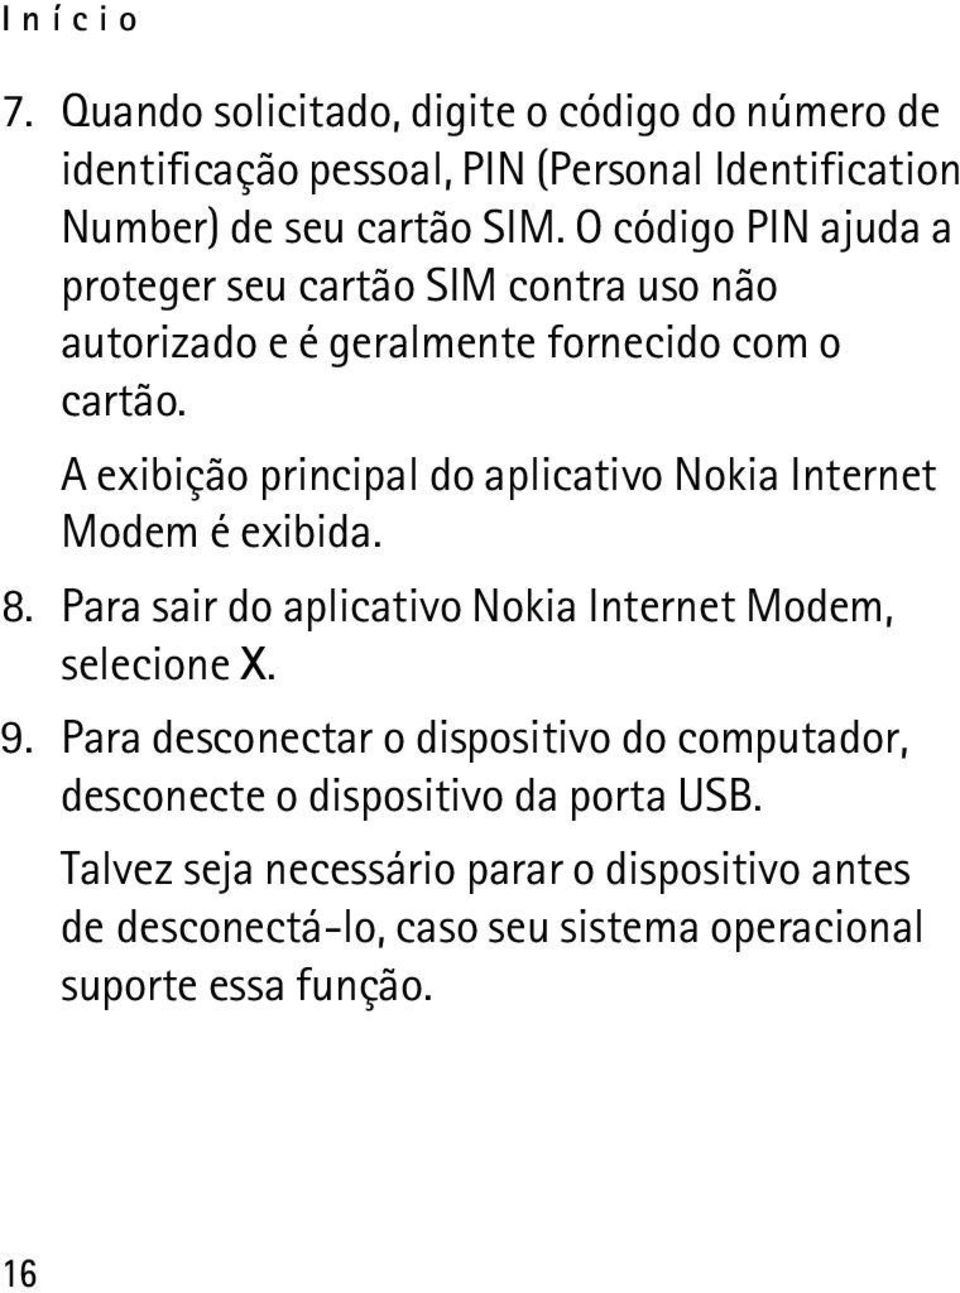 A exibição principal do aplicativo Nokia Internet Modem é exibida. 8. Para sair do aplicativo Nokia Internet Modem, selecione X. 9.